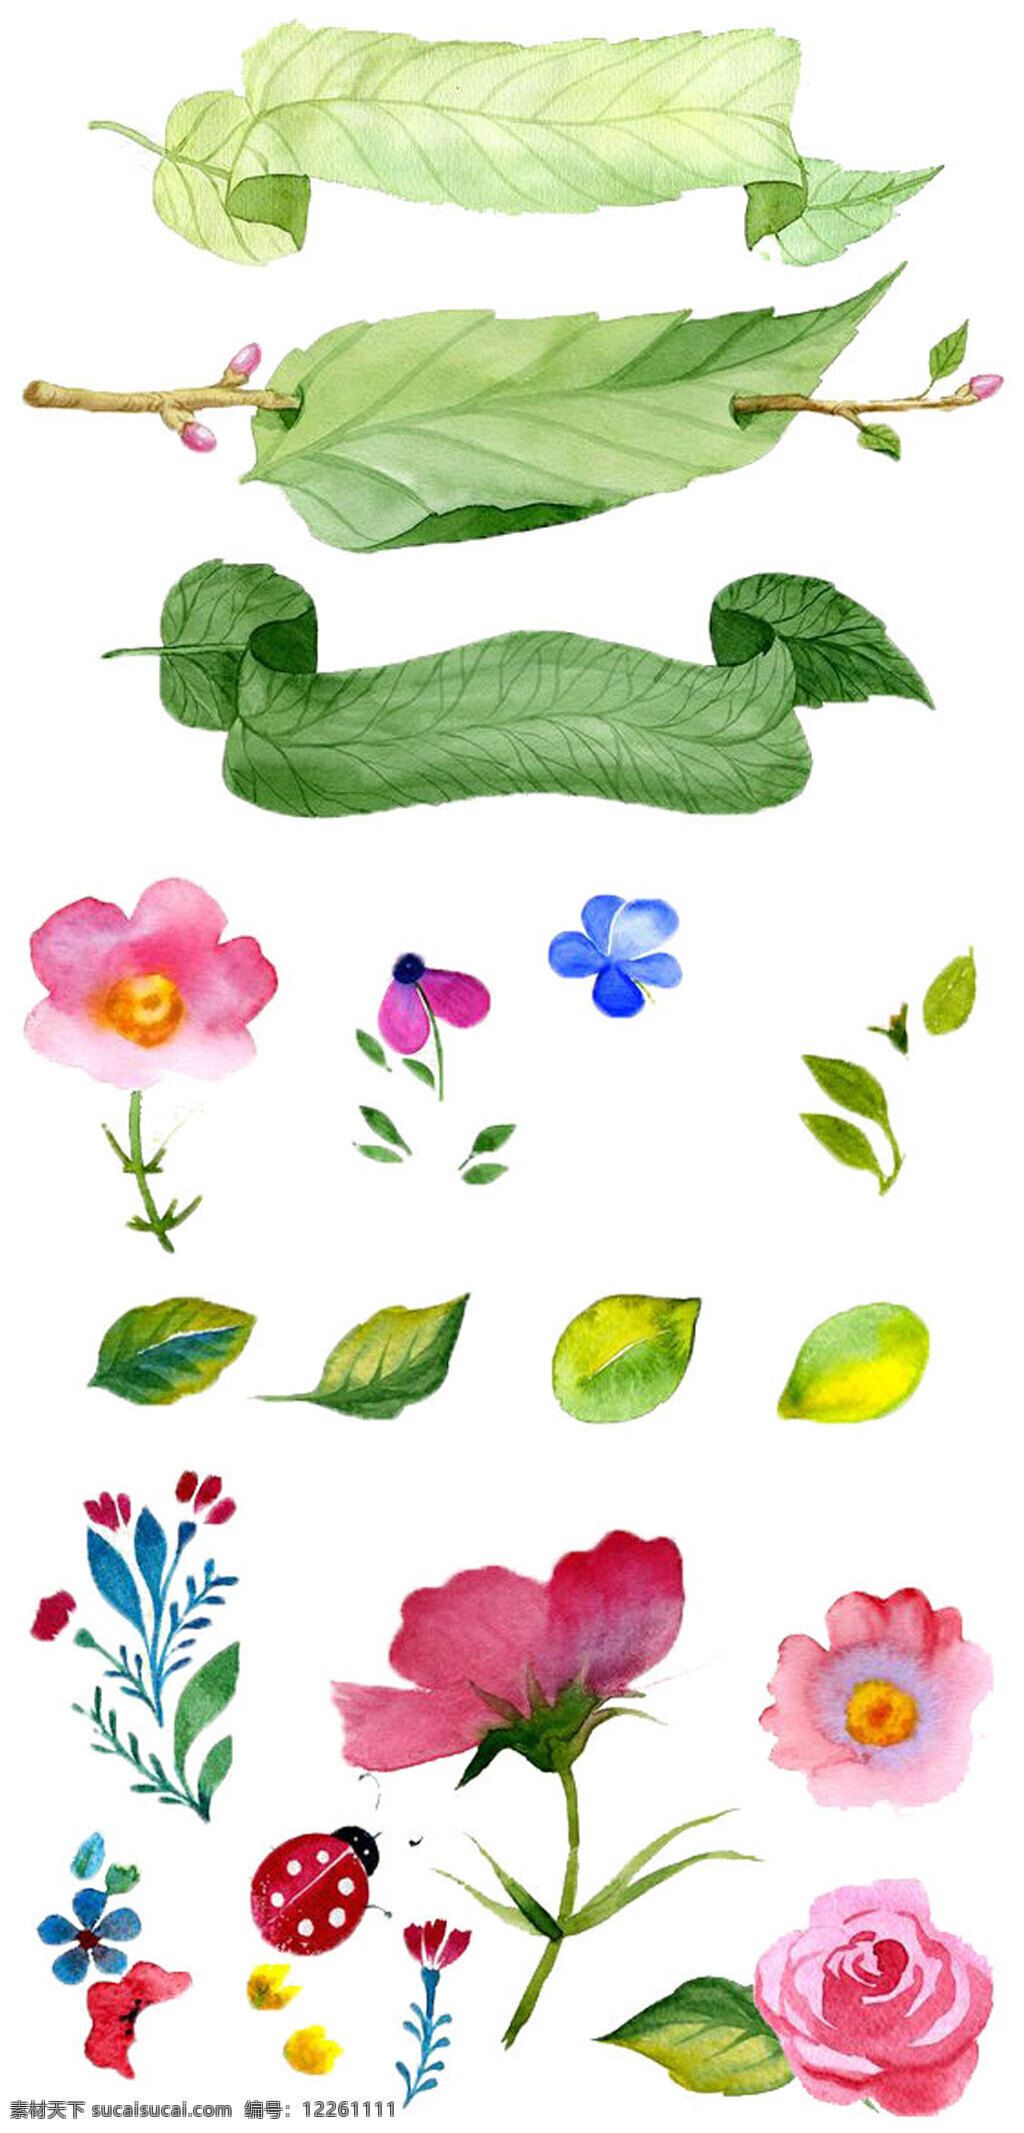 手绘绿叶花朵 手绘 ps 源文件 手绘插画素材 卡通绿叶花朵 树叶和花朵